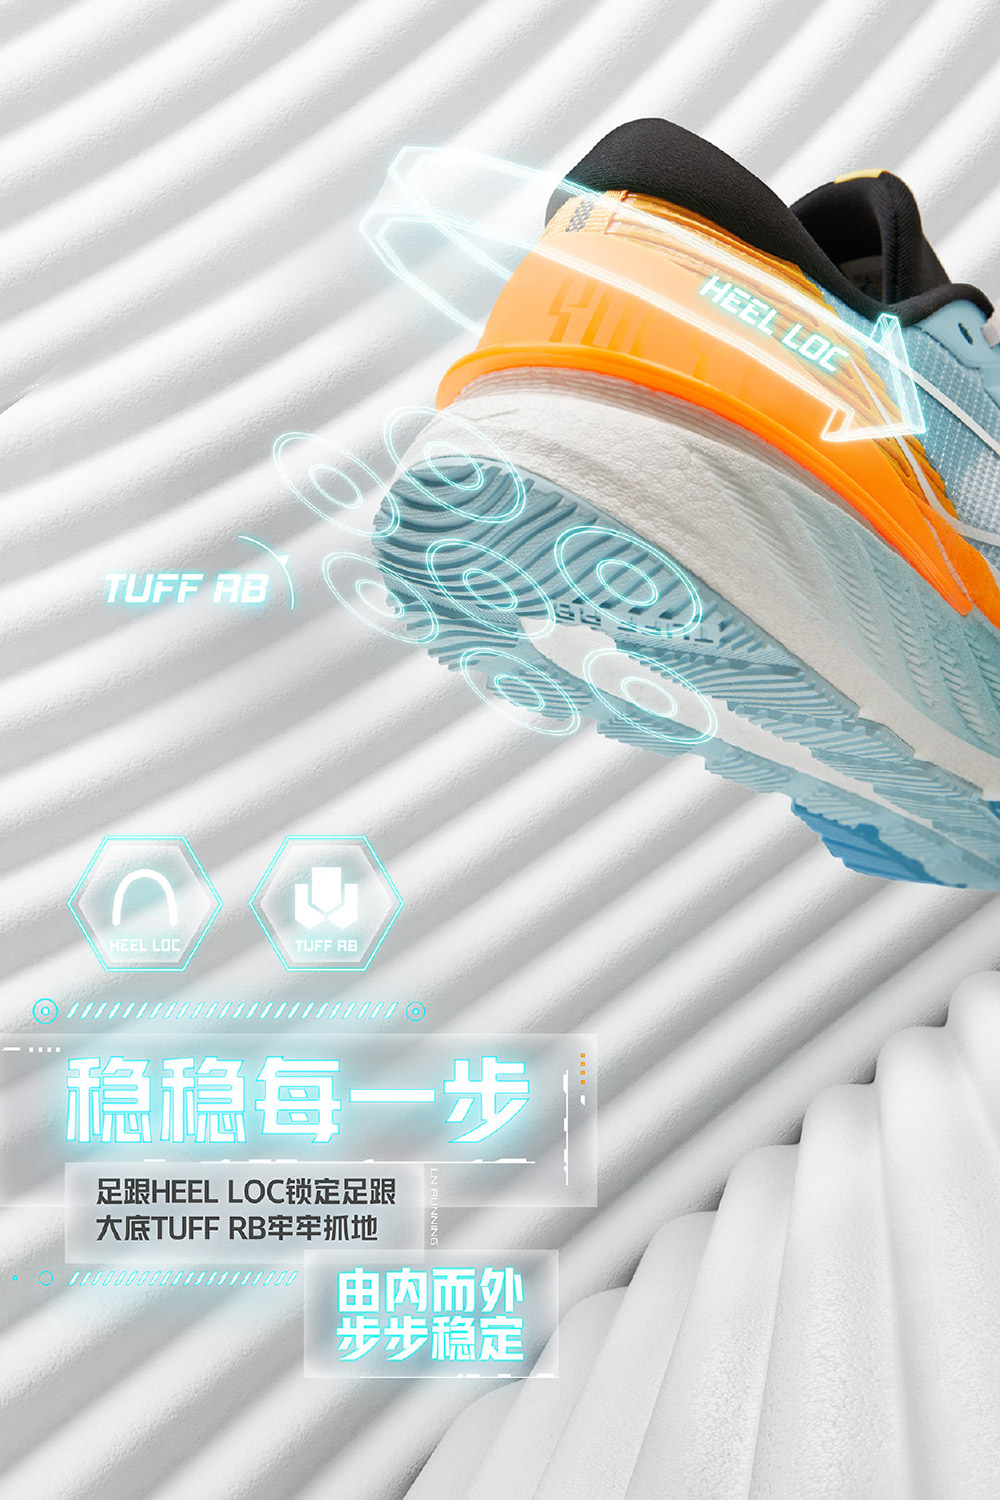 一组李宁品牌的创意鞋子海报设计!